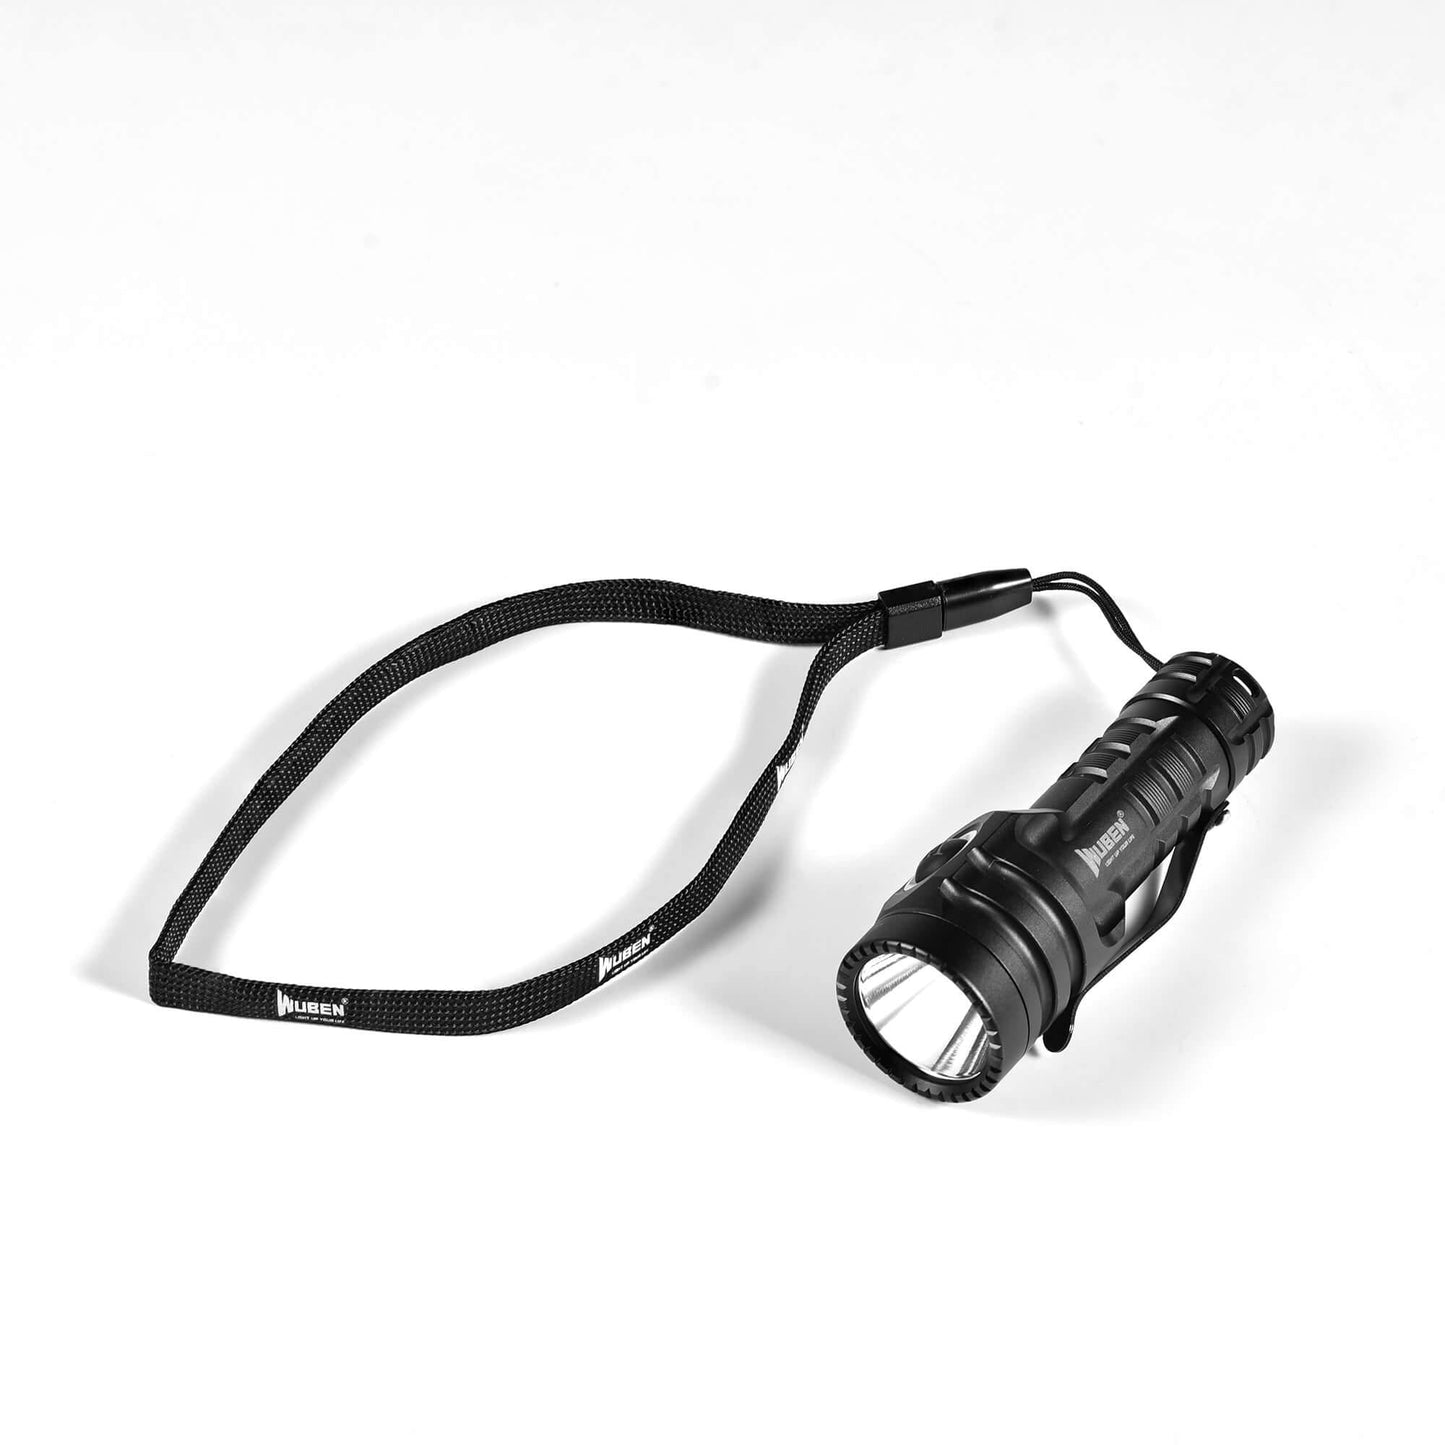 Wuben E6 900 Lumen Compact EDC Flashlight